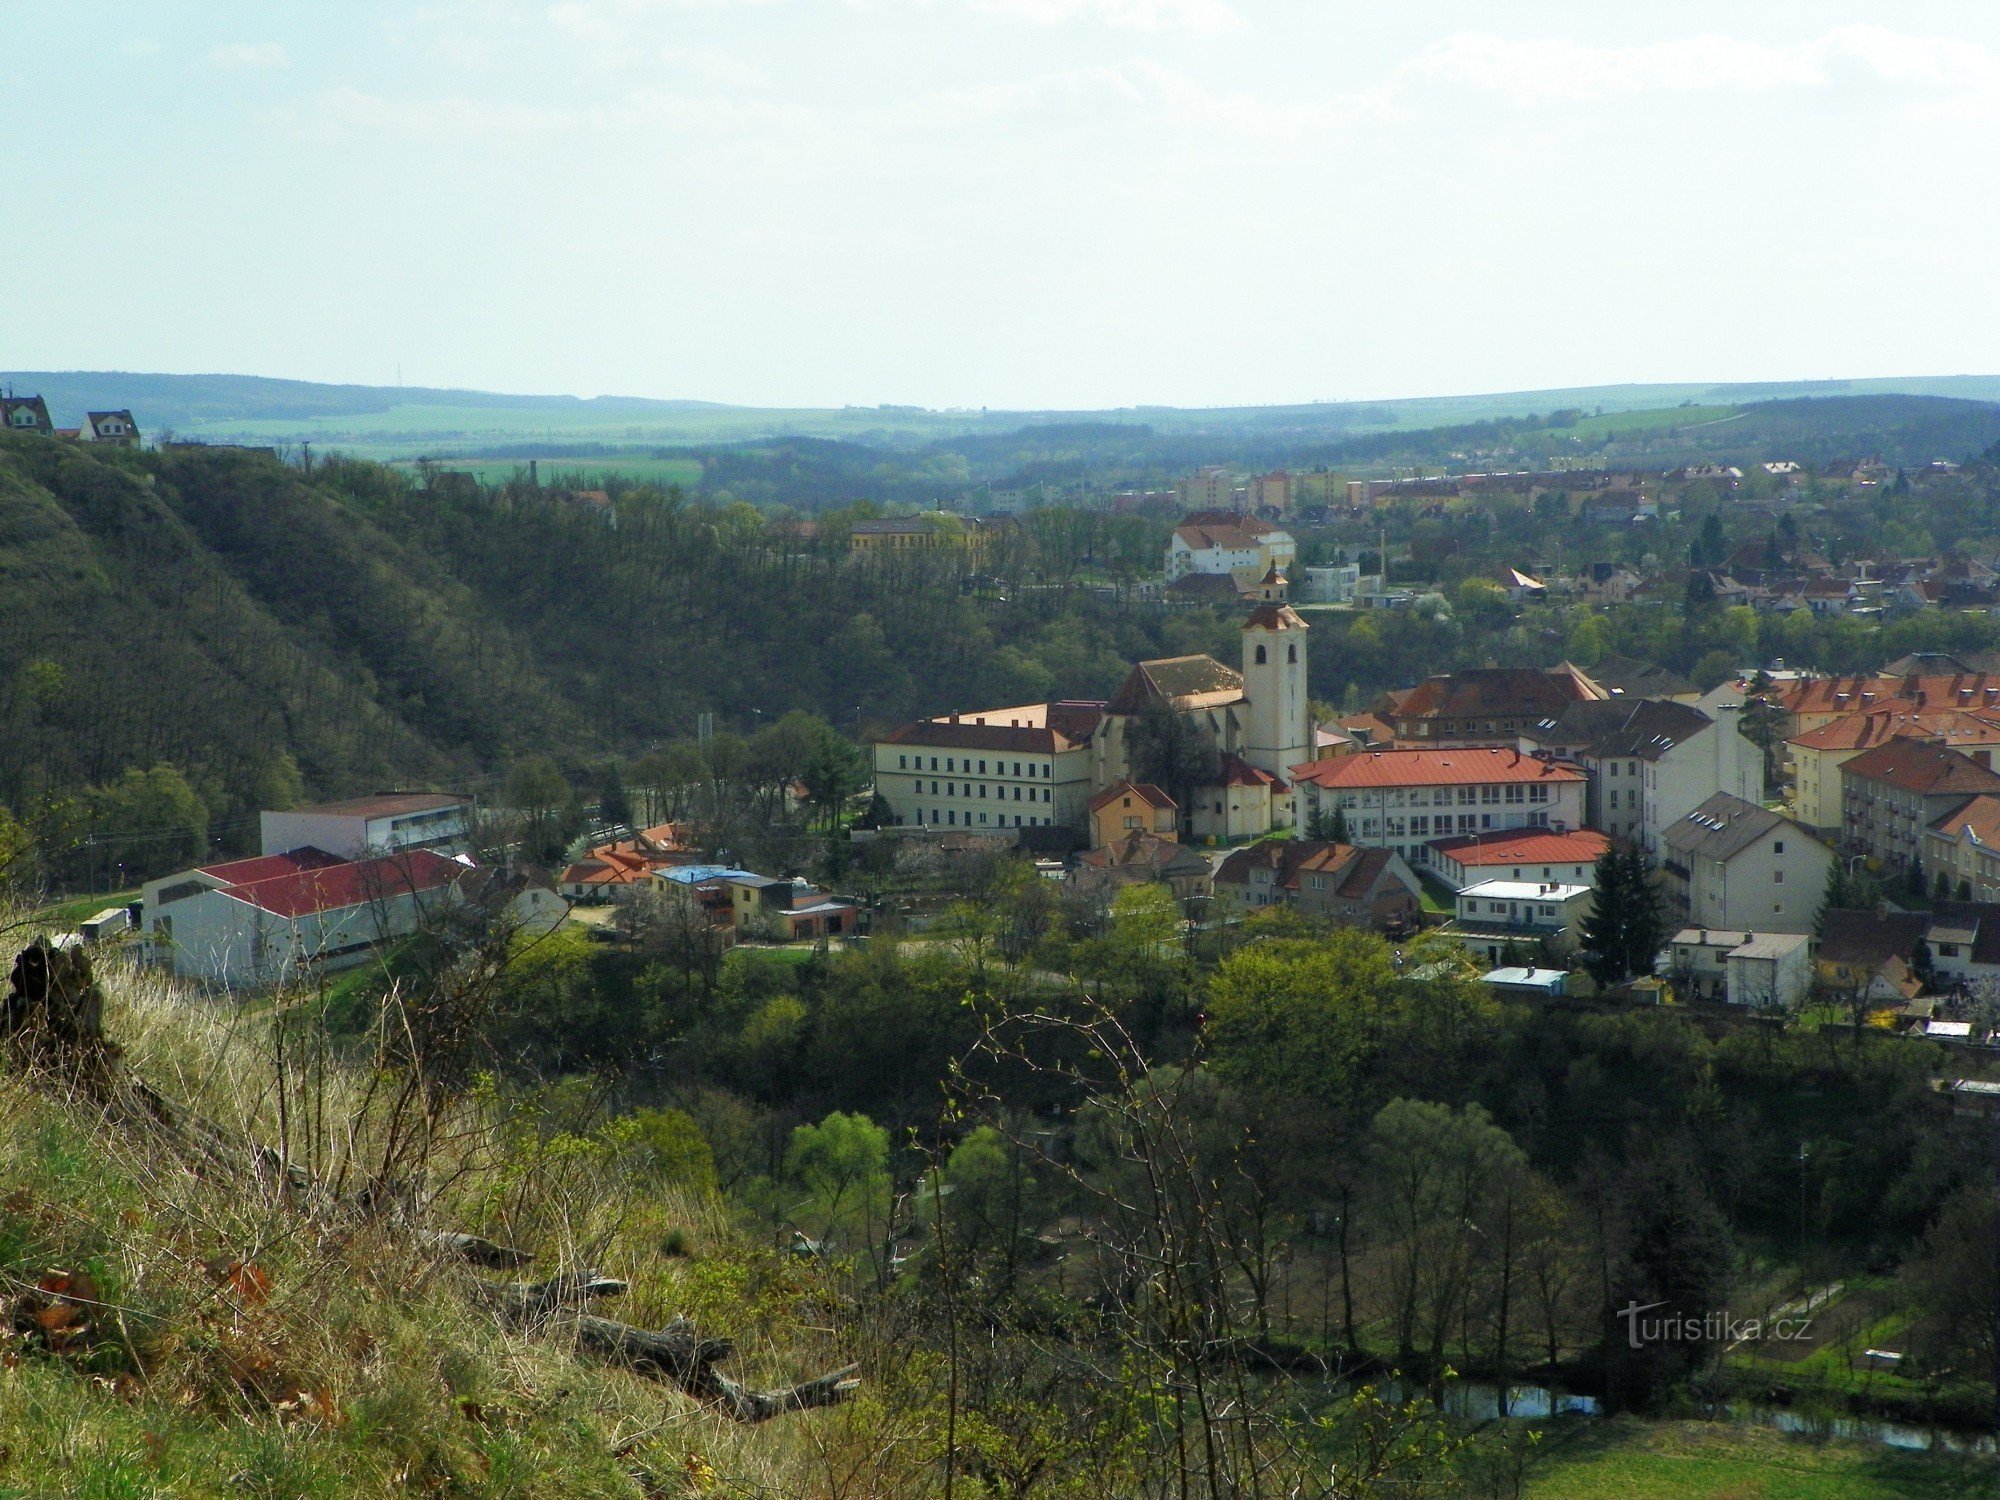 View of Moravský Krumlov from Křížák